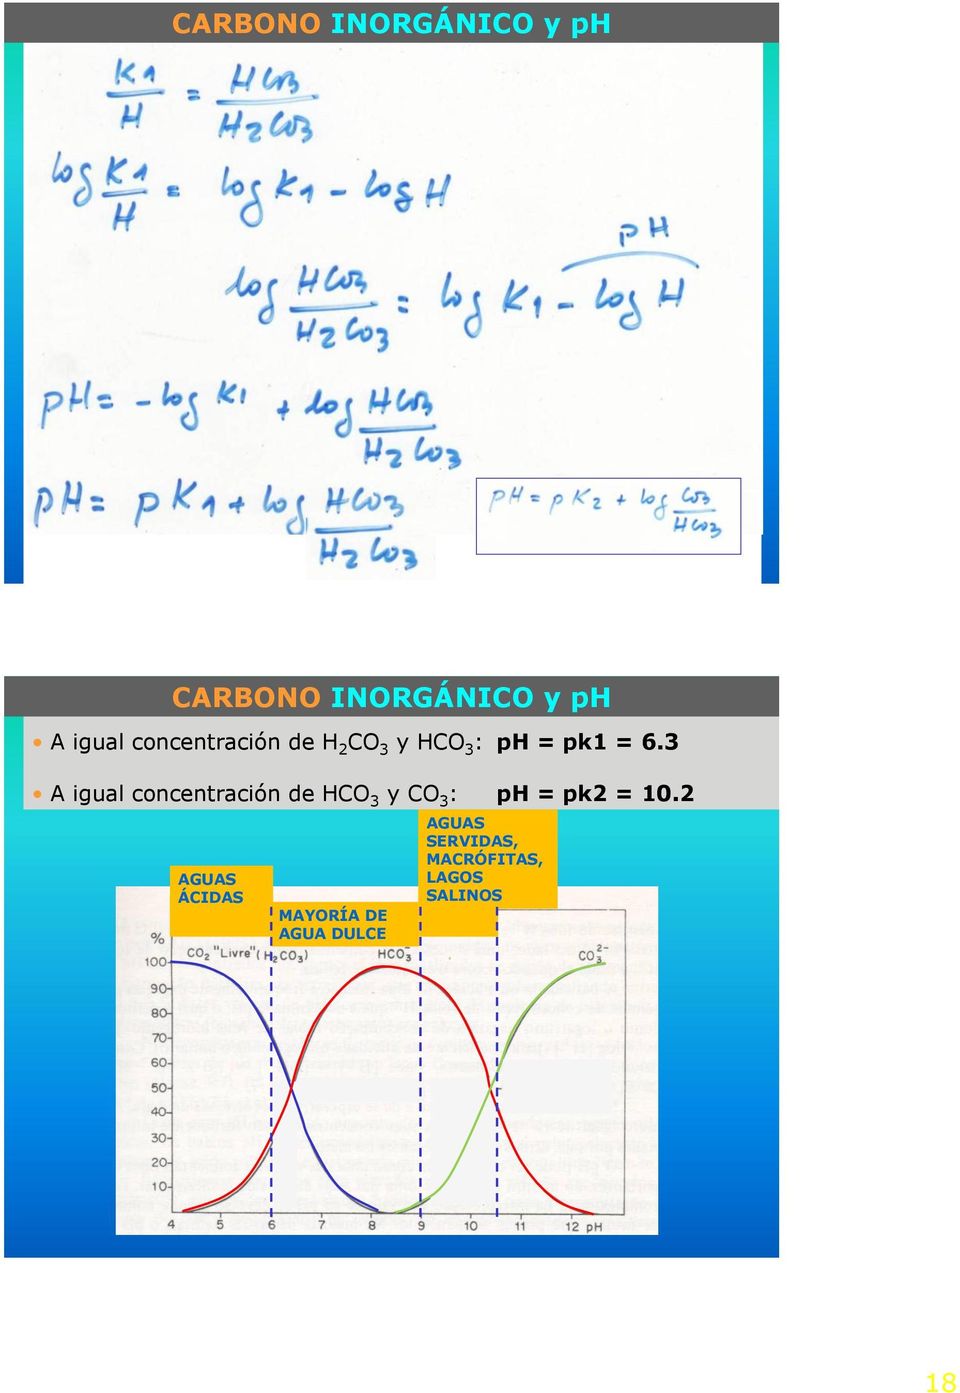 3 A igual concentración de HCO 3 y CO 3 : ph = pk2 = 10.